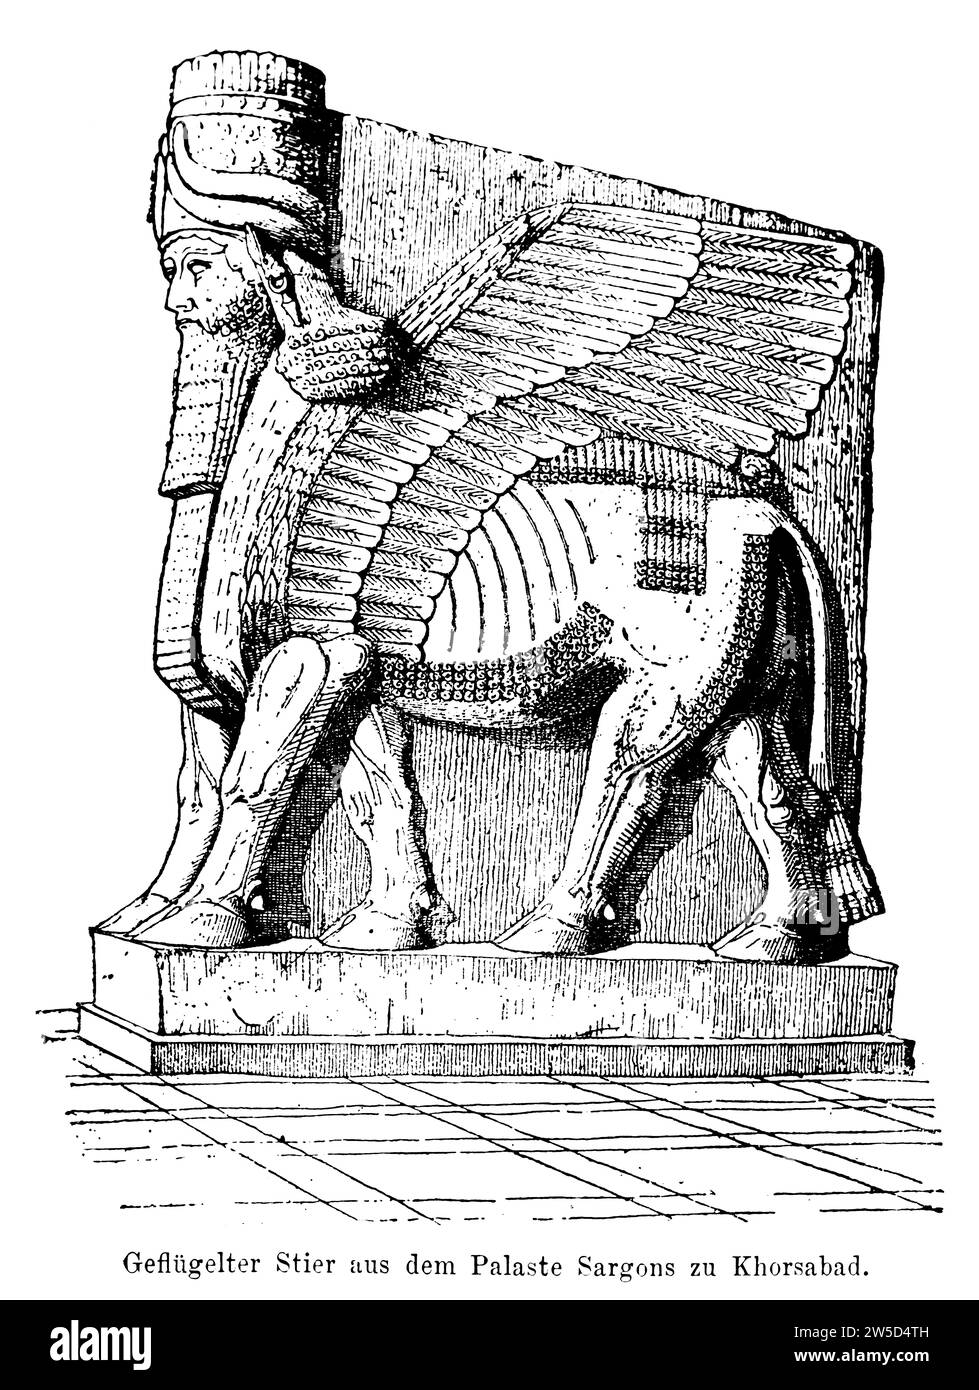 Taureau ailé, Kirub, du palais de Sargon à Khorsabad, Assyrie, tête humaine, mitre, cornes, barbe, boucles, plumes, relief 4m de haut, cinq pattes Banque D'Images